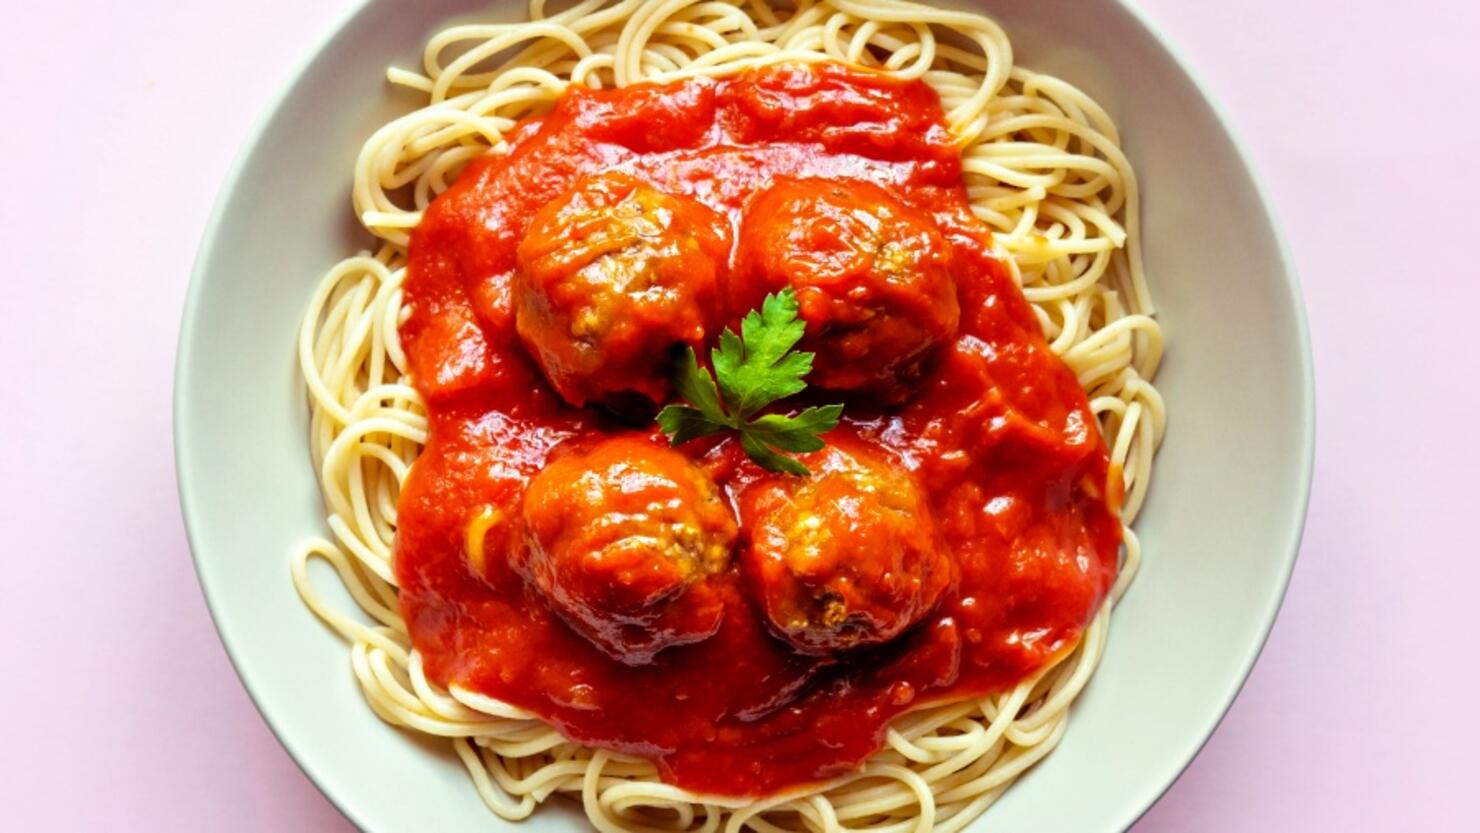 Meatballs in spaghetti